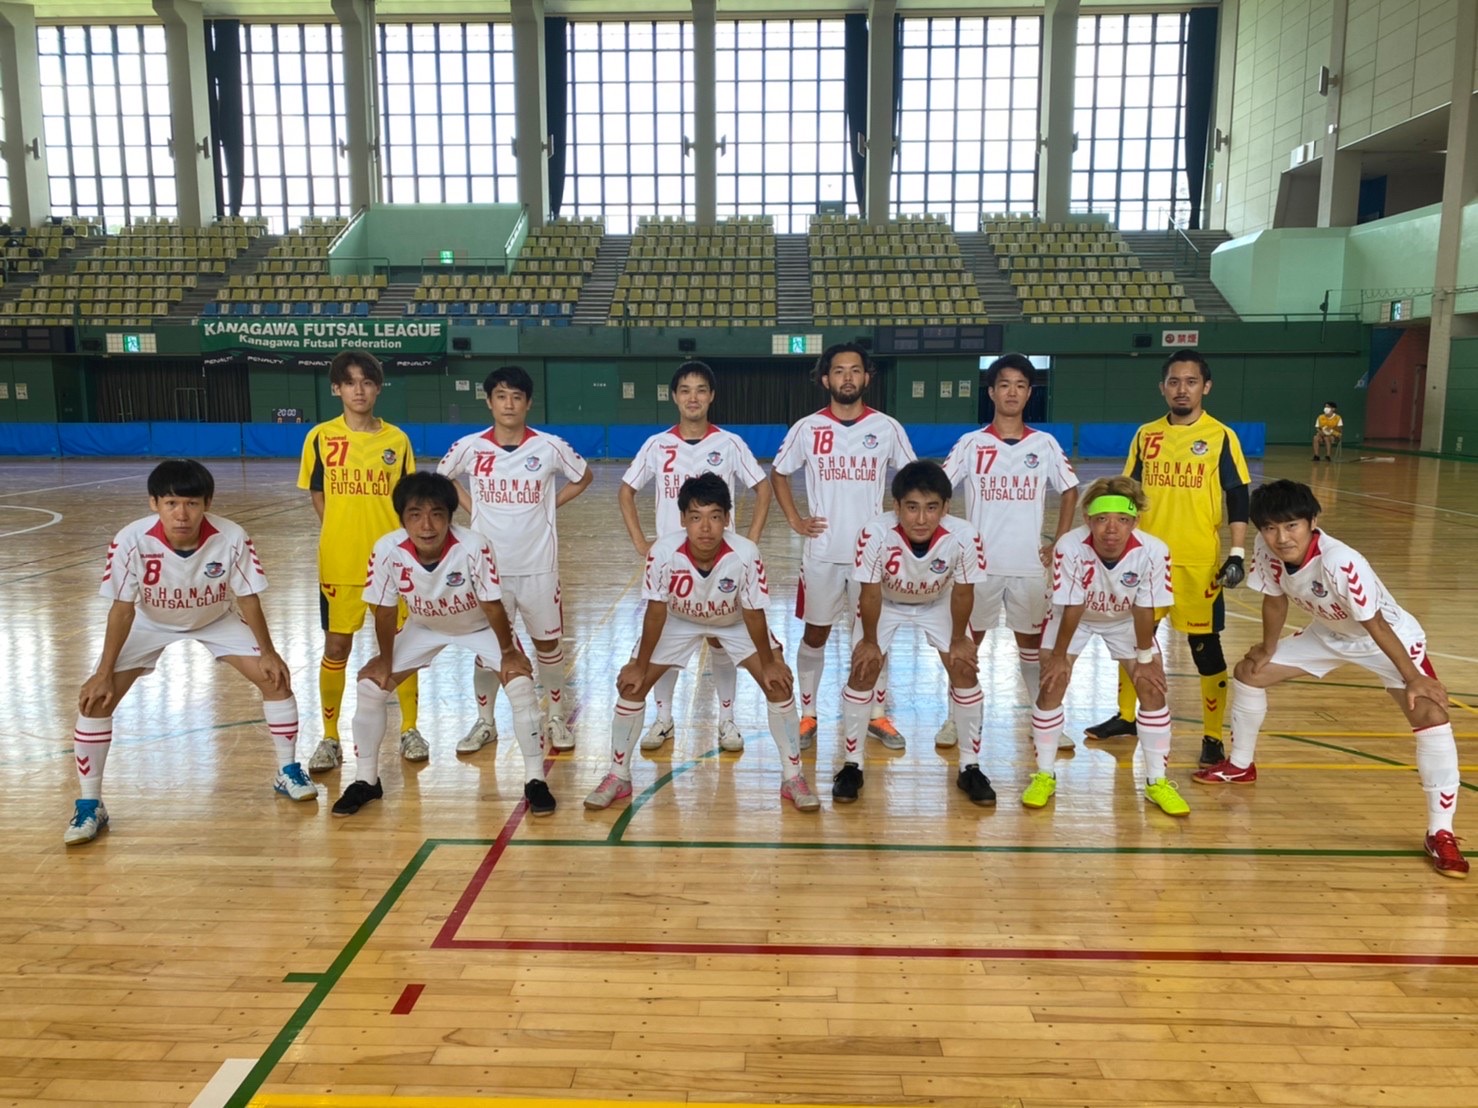 競技男子フットサルチーム 湘南フットサルクラブ 22年度選手追加募集